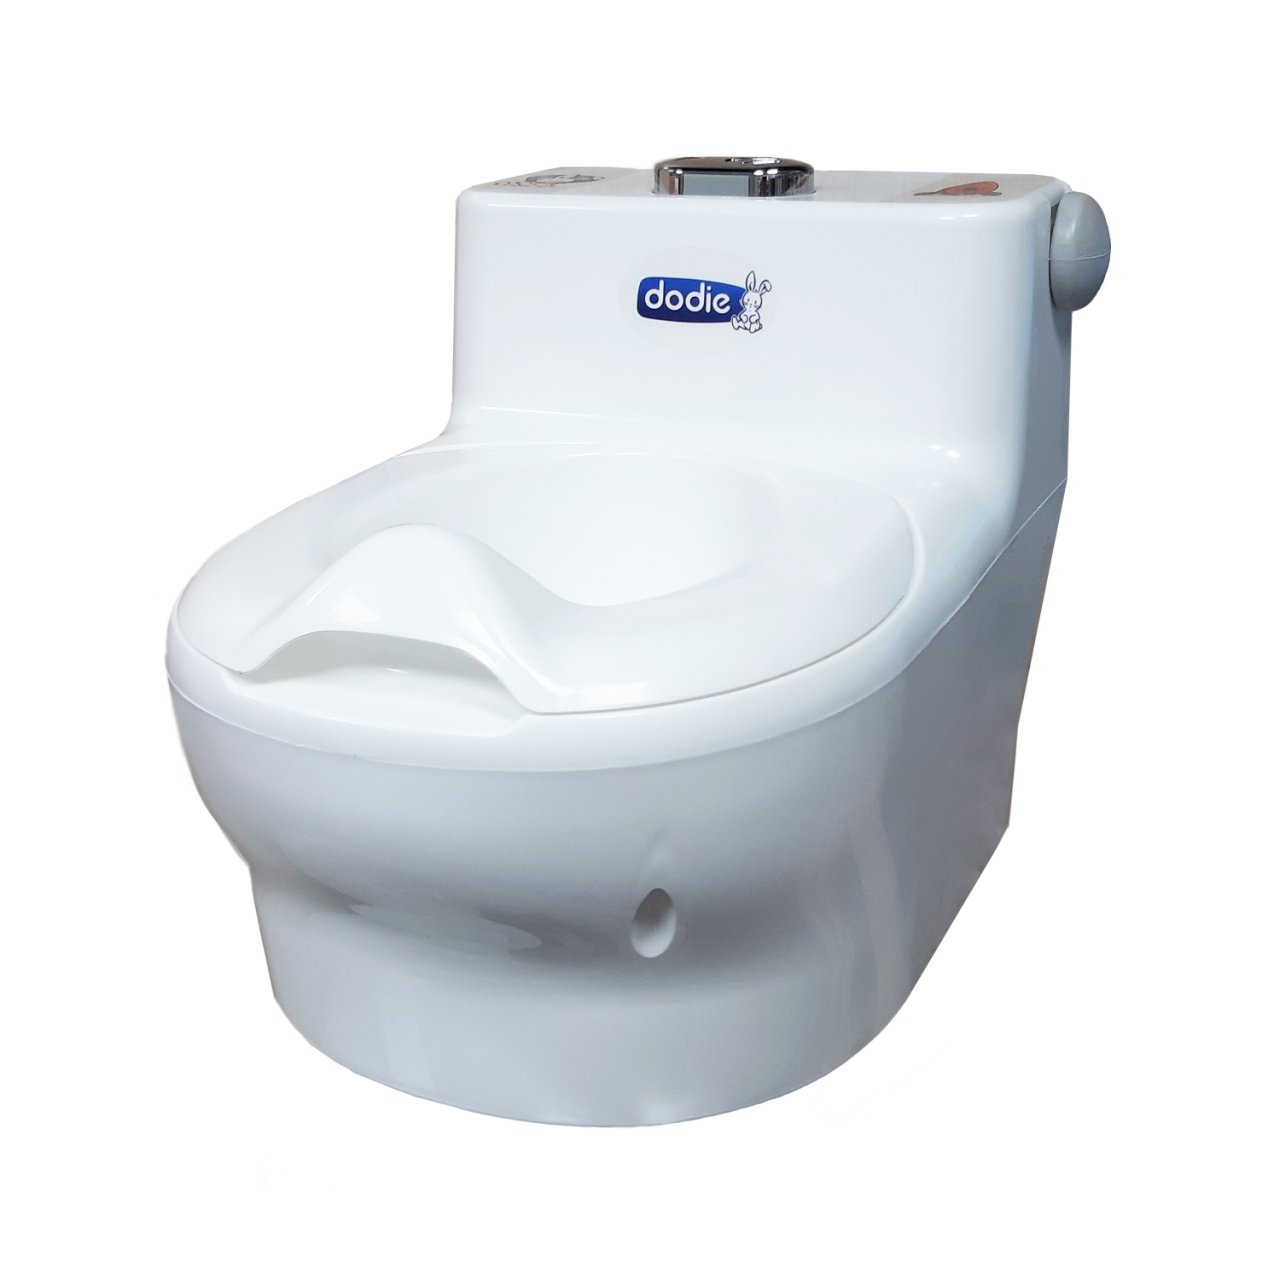 توالت فرنگی کودک دودیه مدل B1401